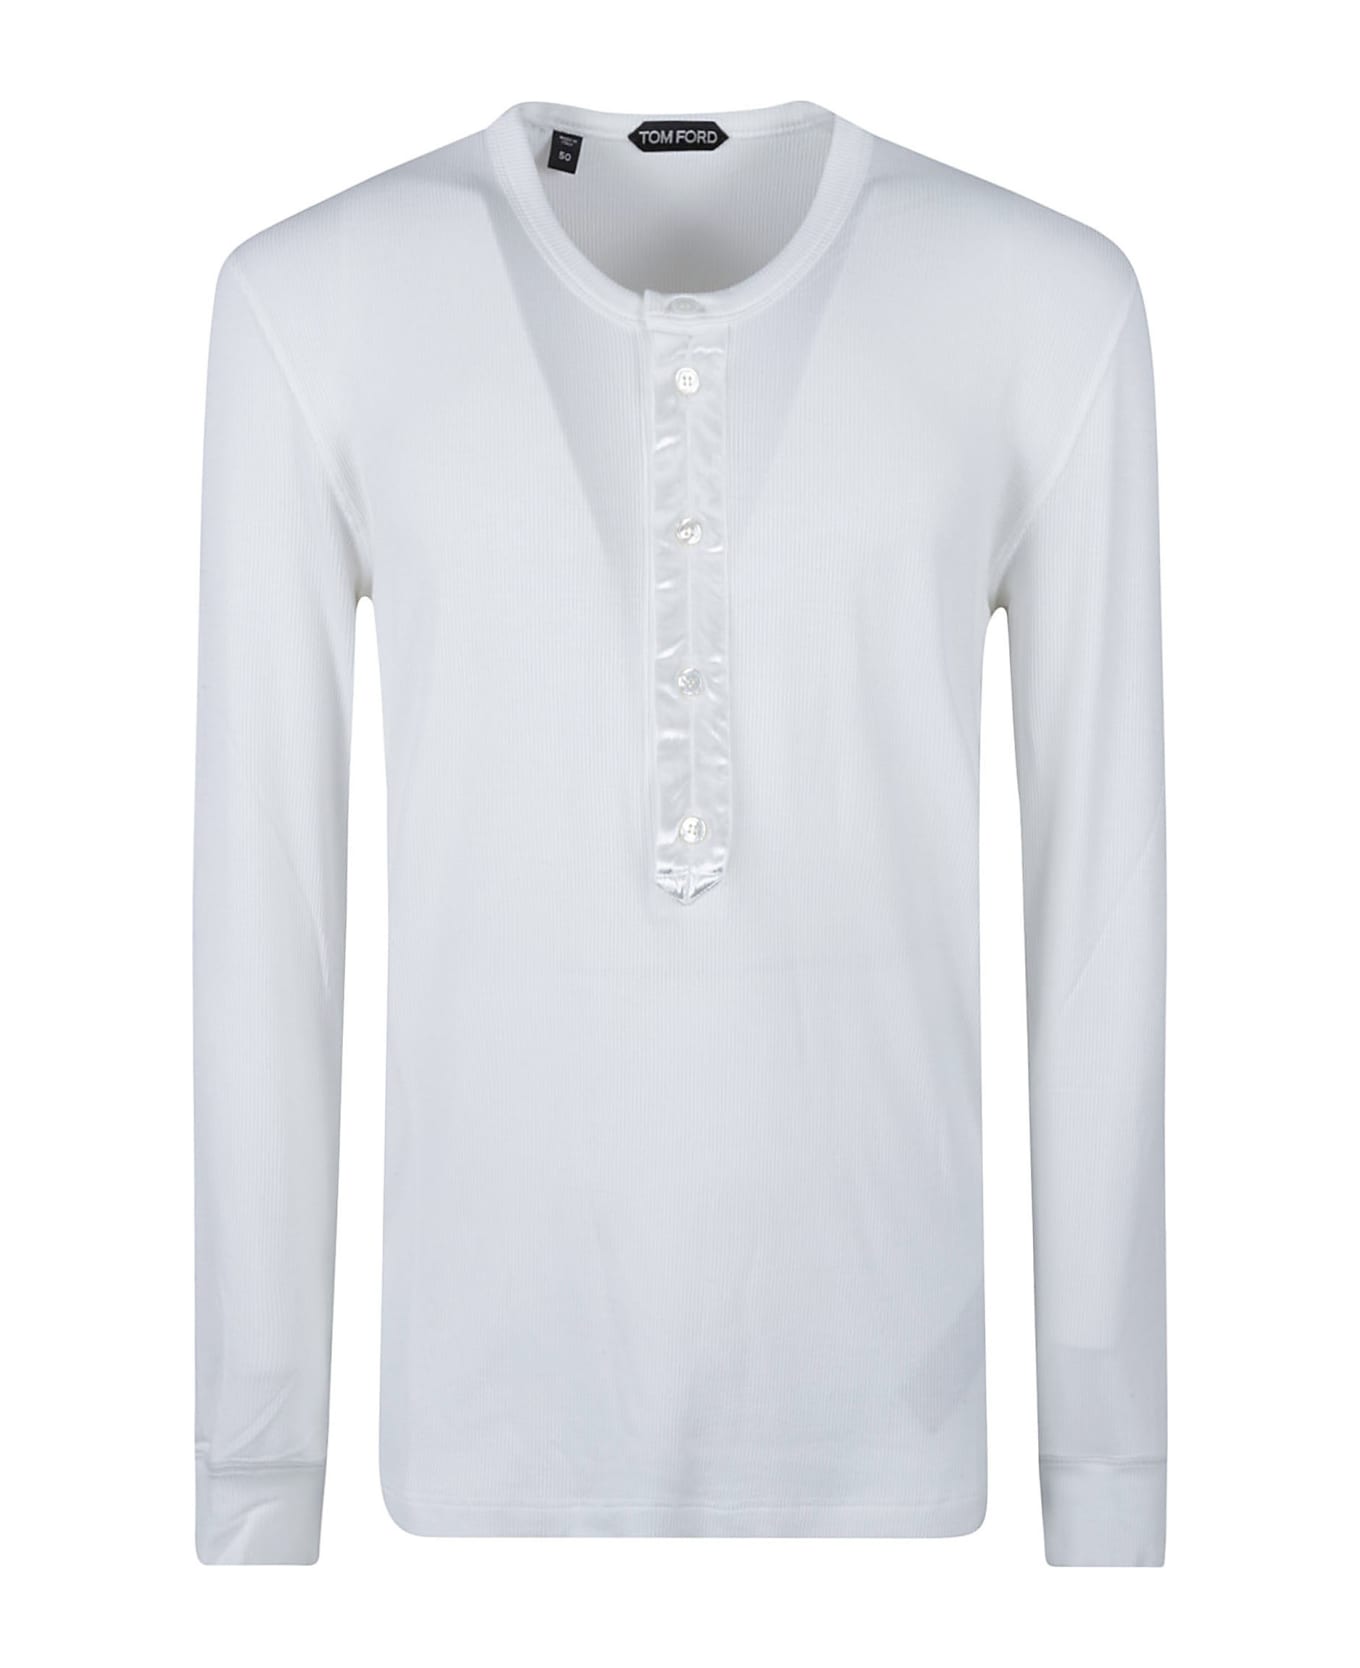 Tom Ford Long-sleeved T-shirt - White